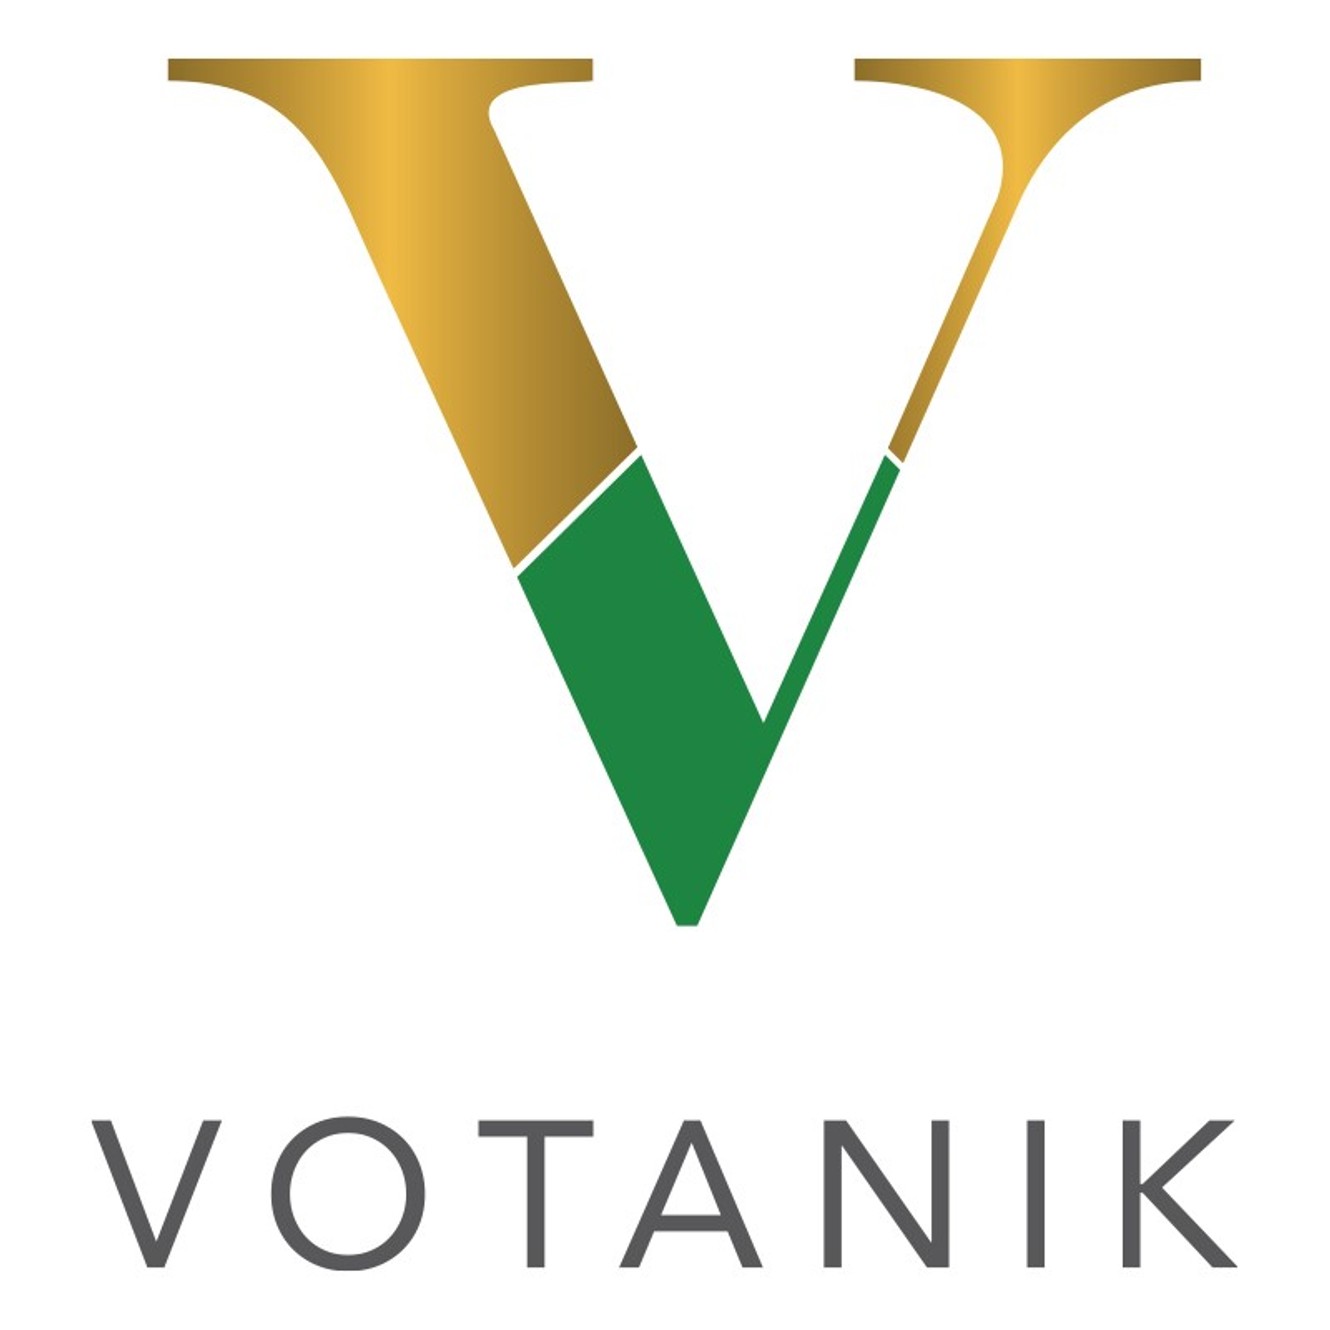 Votanik Medical logo, Get Us PPE partner